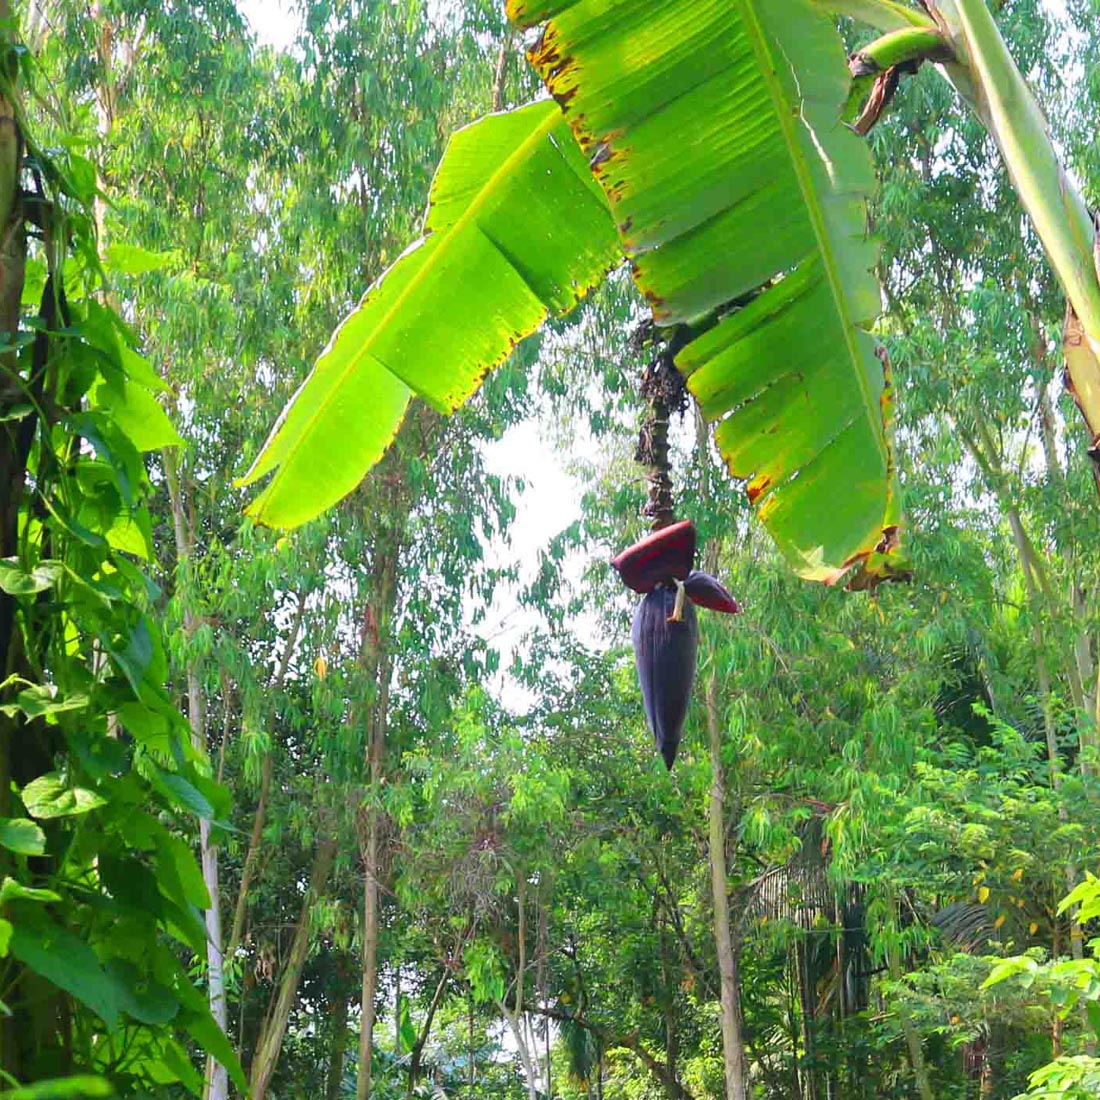 Banana Tree Photography in Bangladesh preview image.